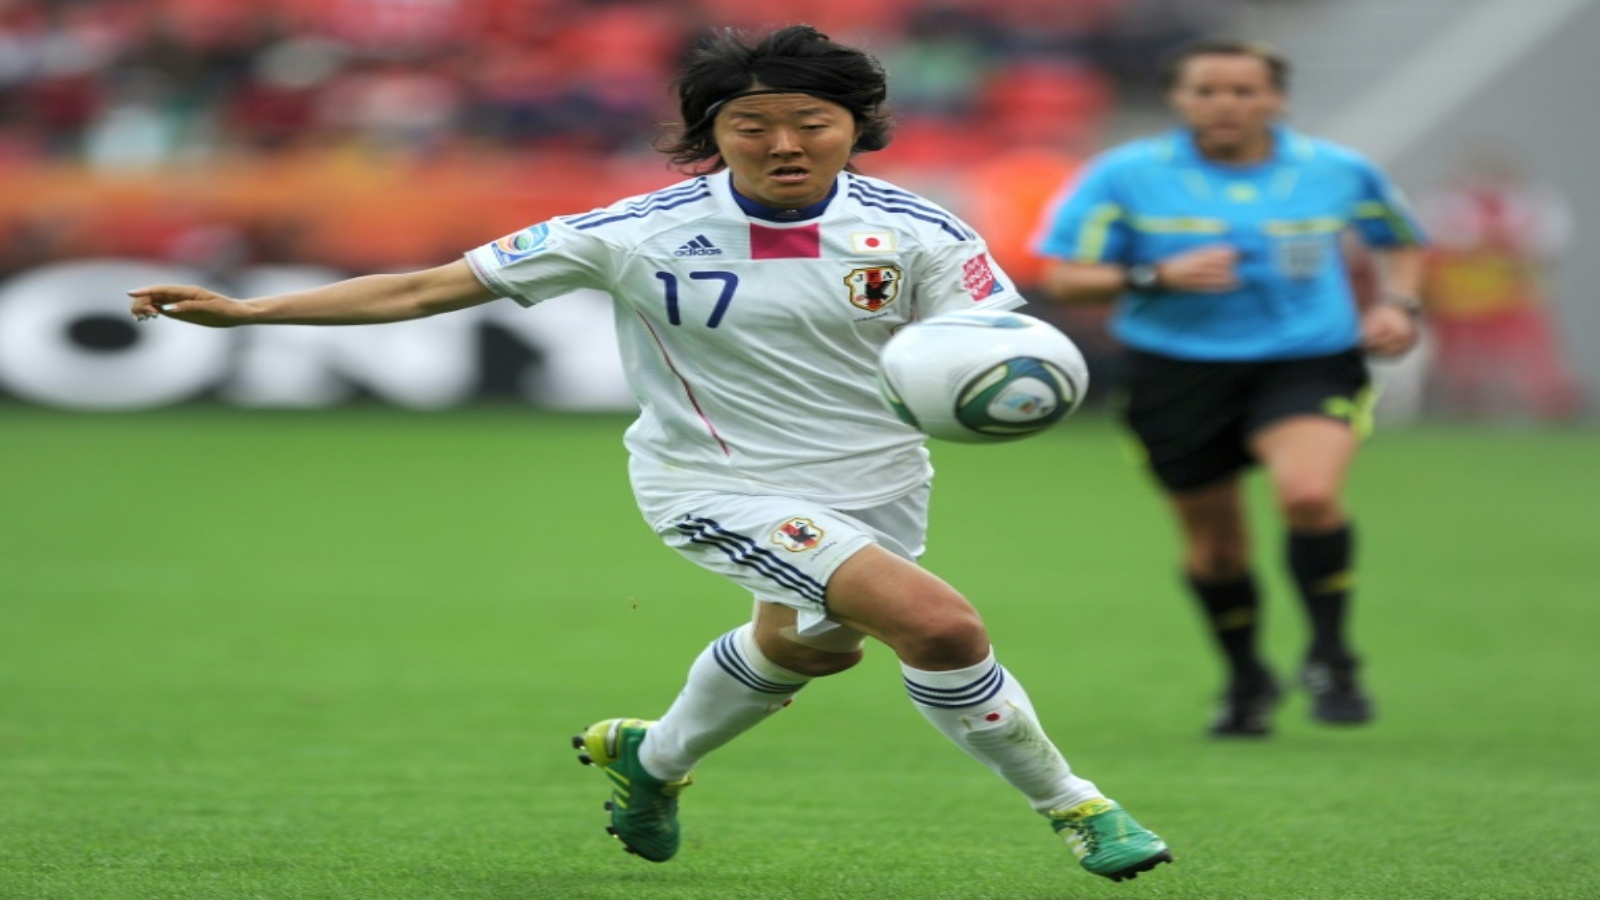 لاعبة منتخب سيدات اليابان لكرة القدم يوكي ناغاساتو في صورة مؤرخة في الأول من تموز/يوليو 2011 خلال مباراة اليابان والمكسيك في كأس العالم للسيدات.